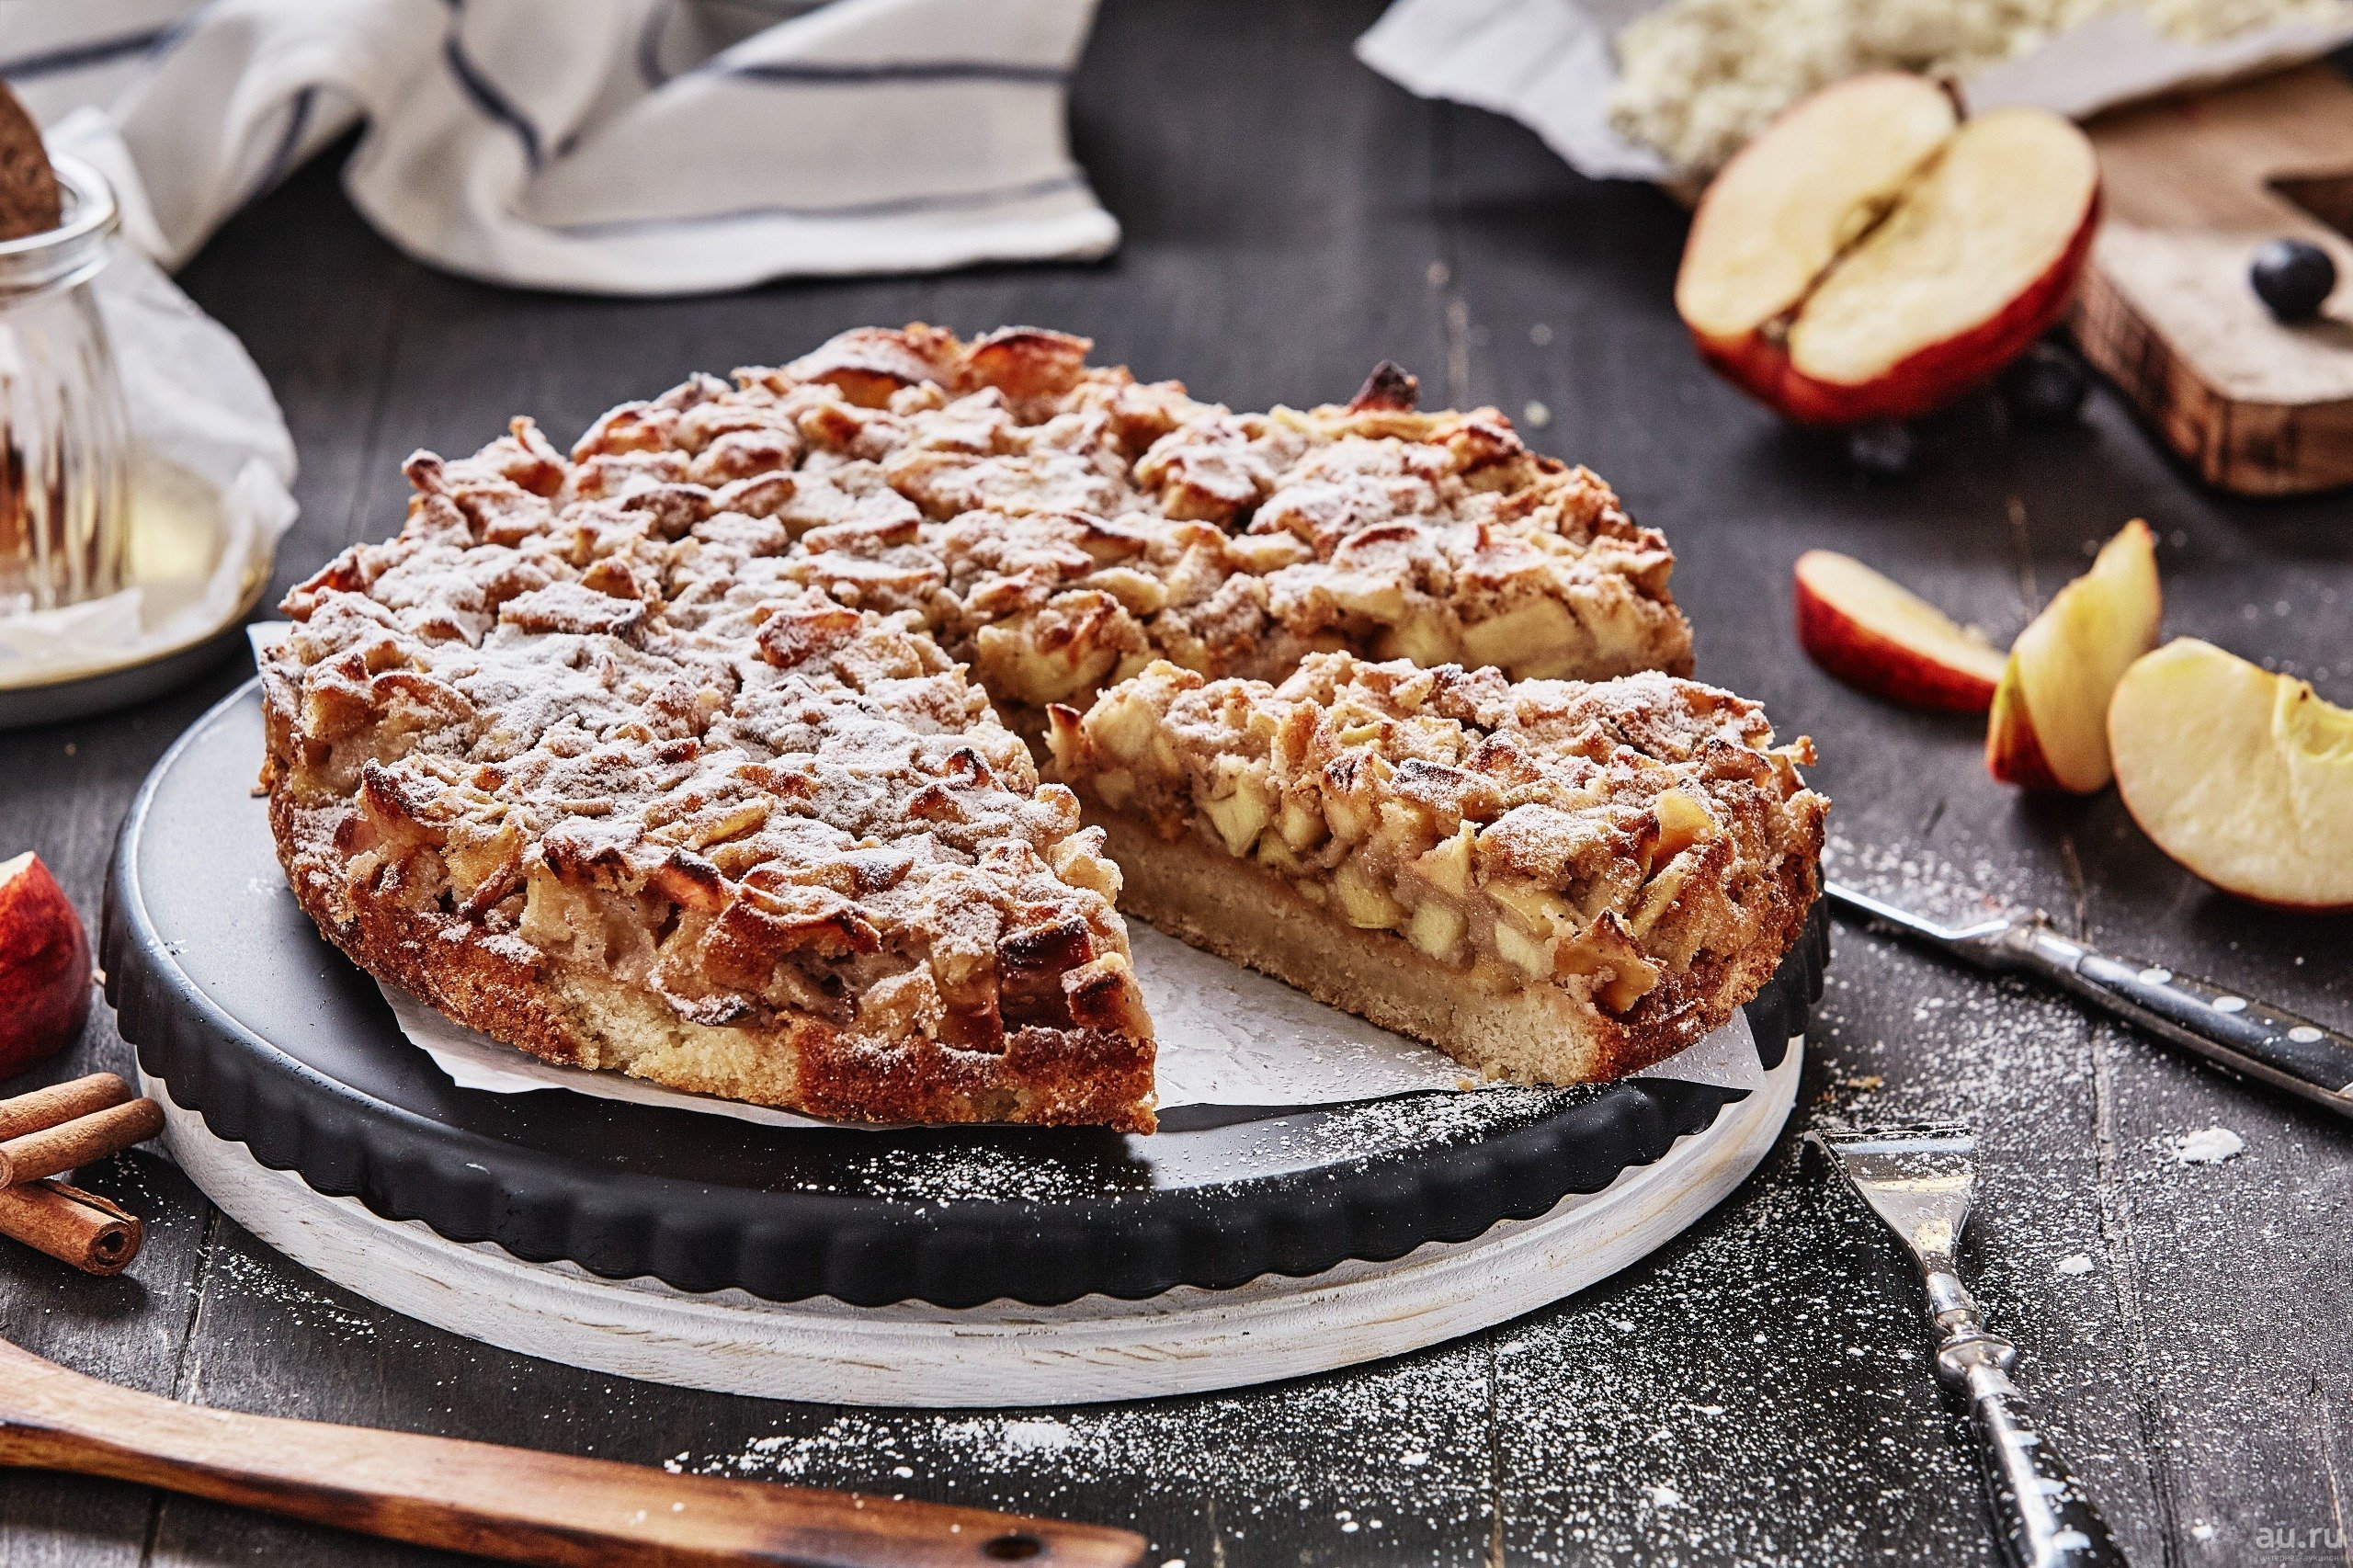 Сладкие пироги к чаю рецепты. Шарлотка американский пирог. Американский пирог яблочный пирог. Эппл Пай пирог. Apple pie (яблочный пирог).